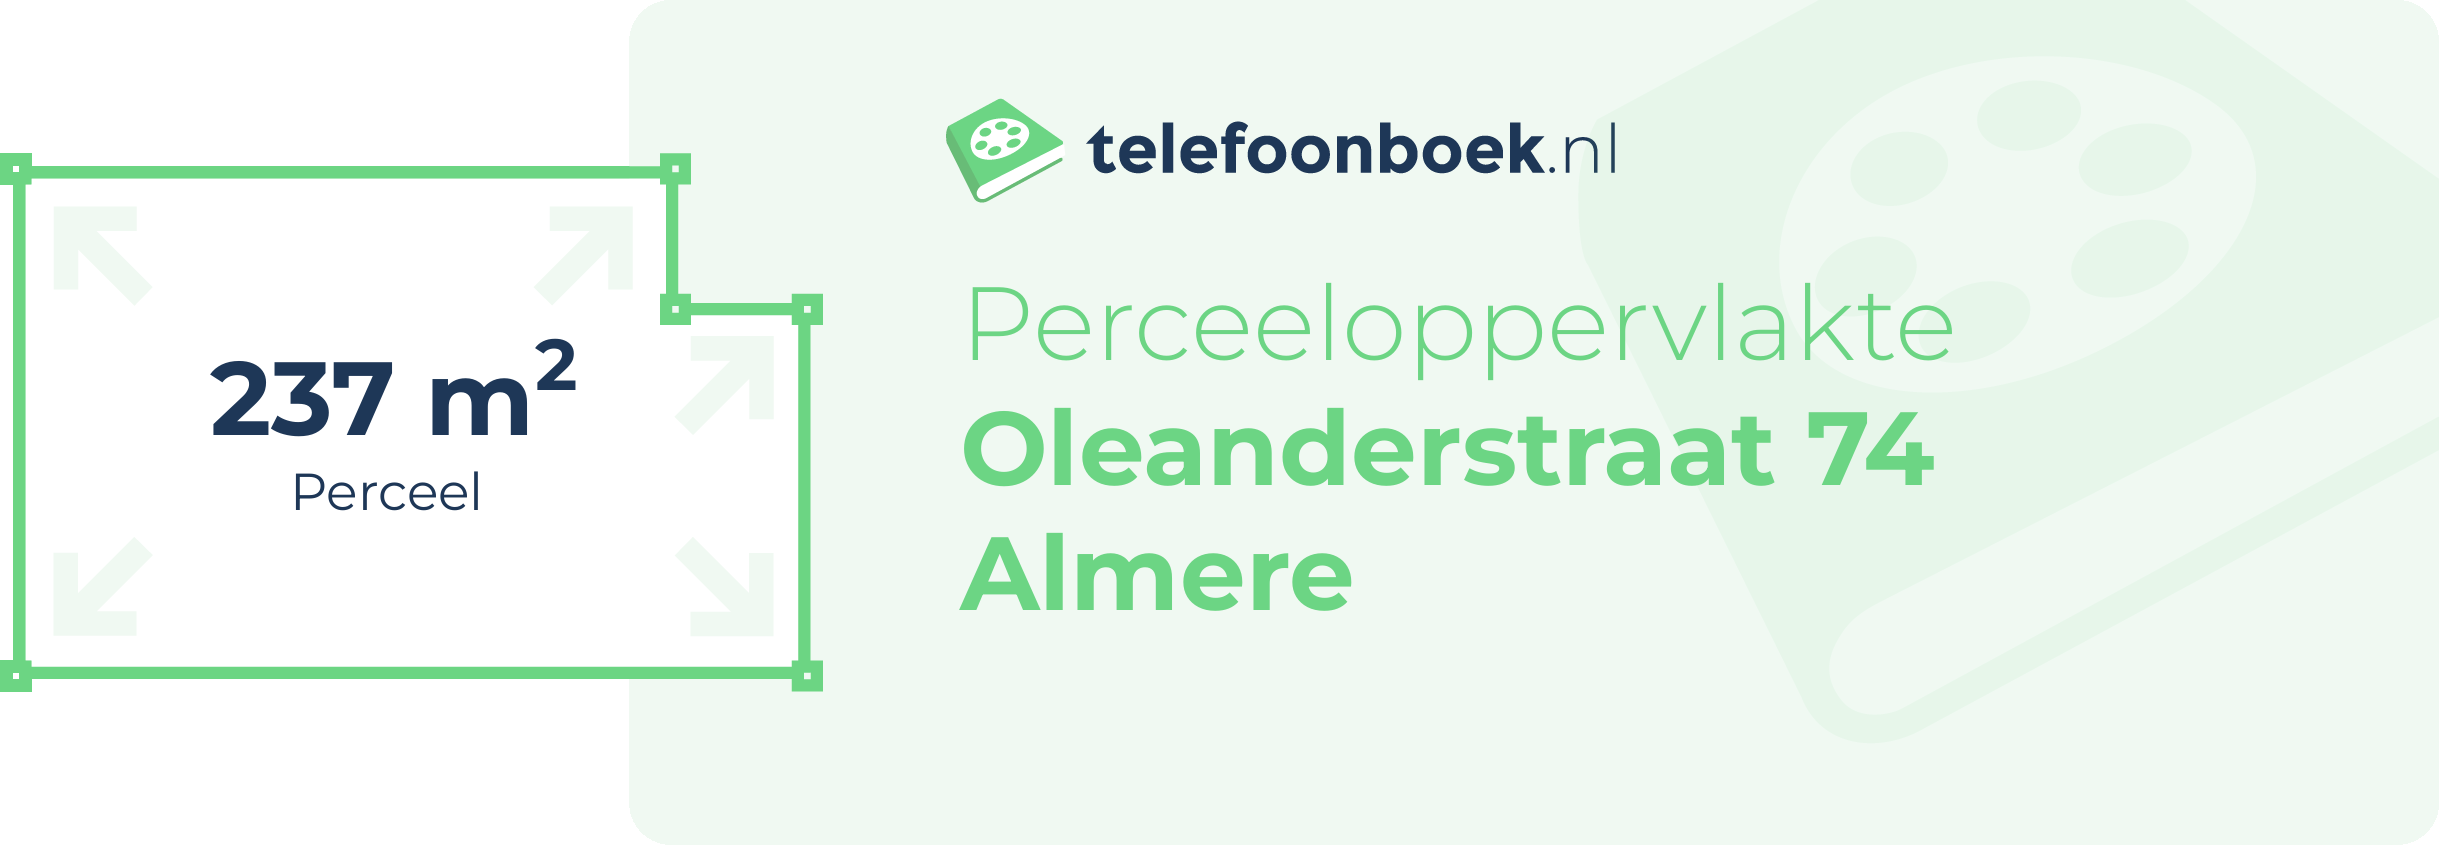 Perceeloppervlakte Oleanderstraat 74 Almere